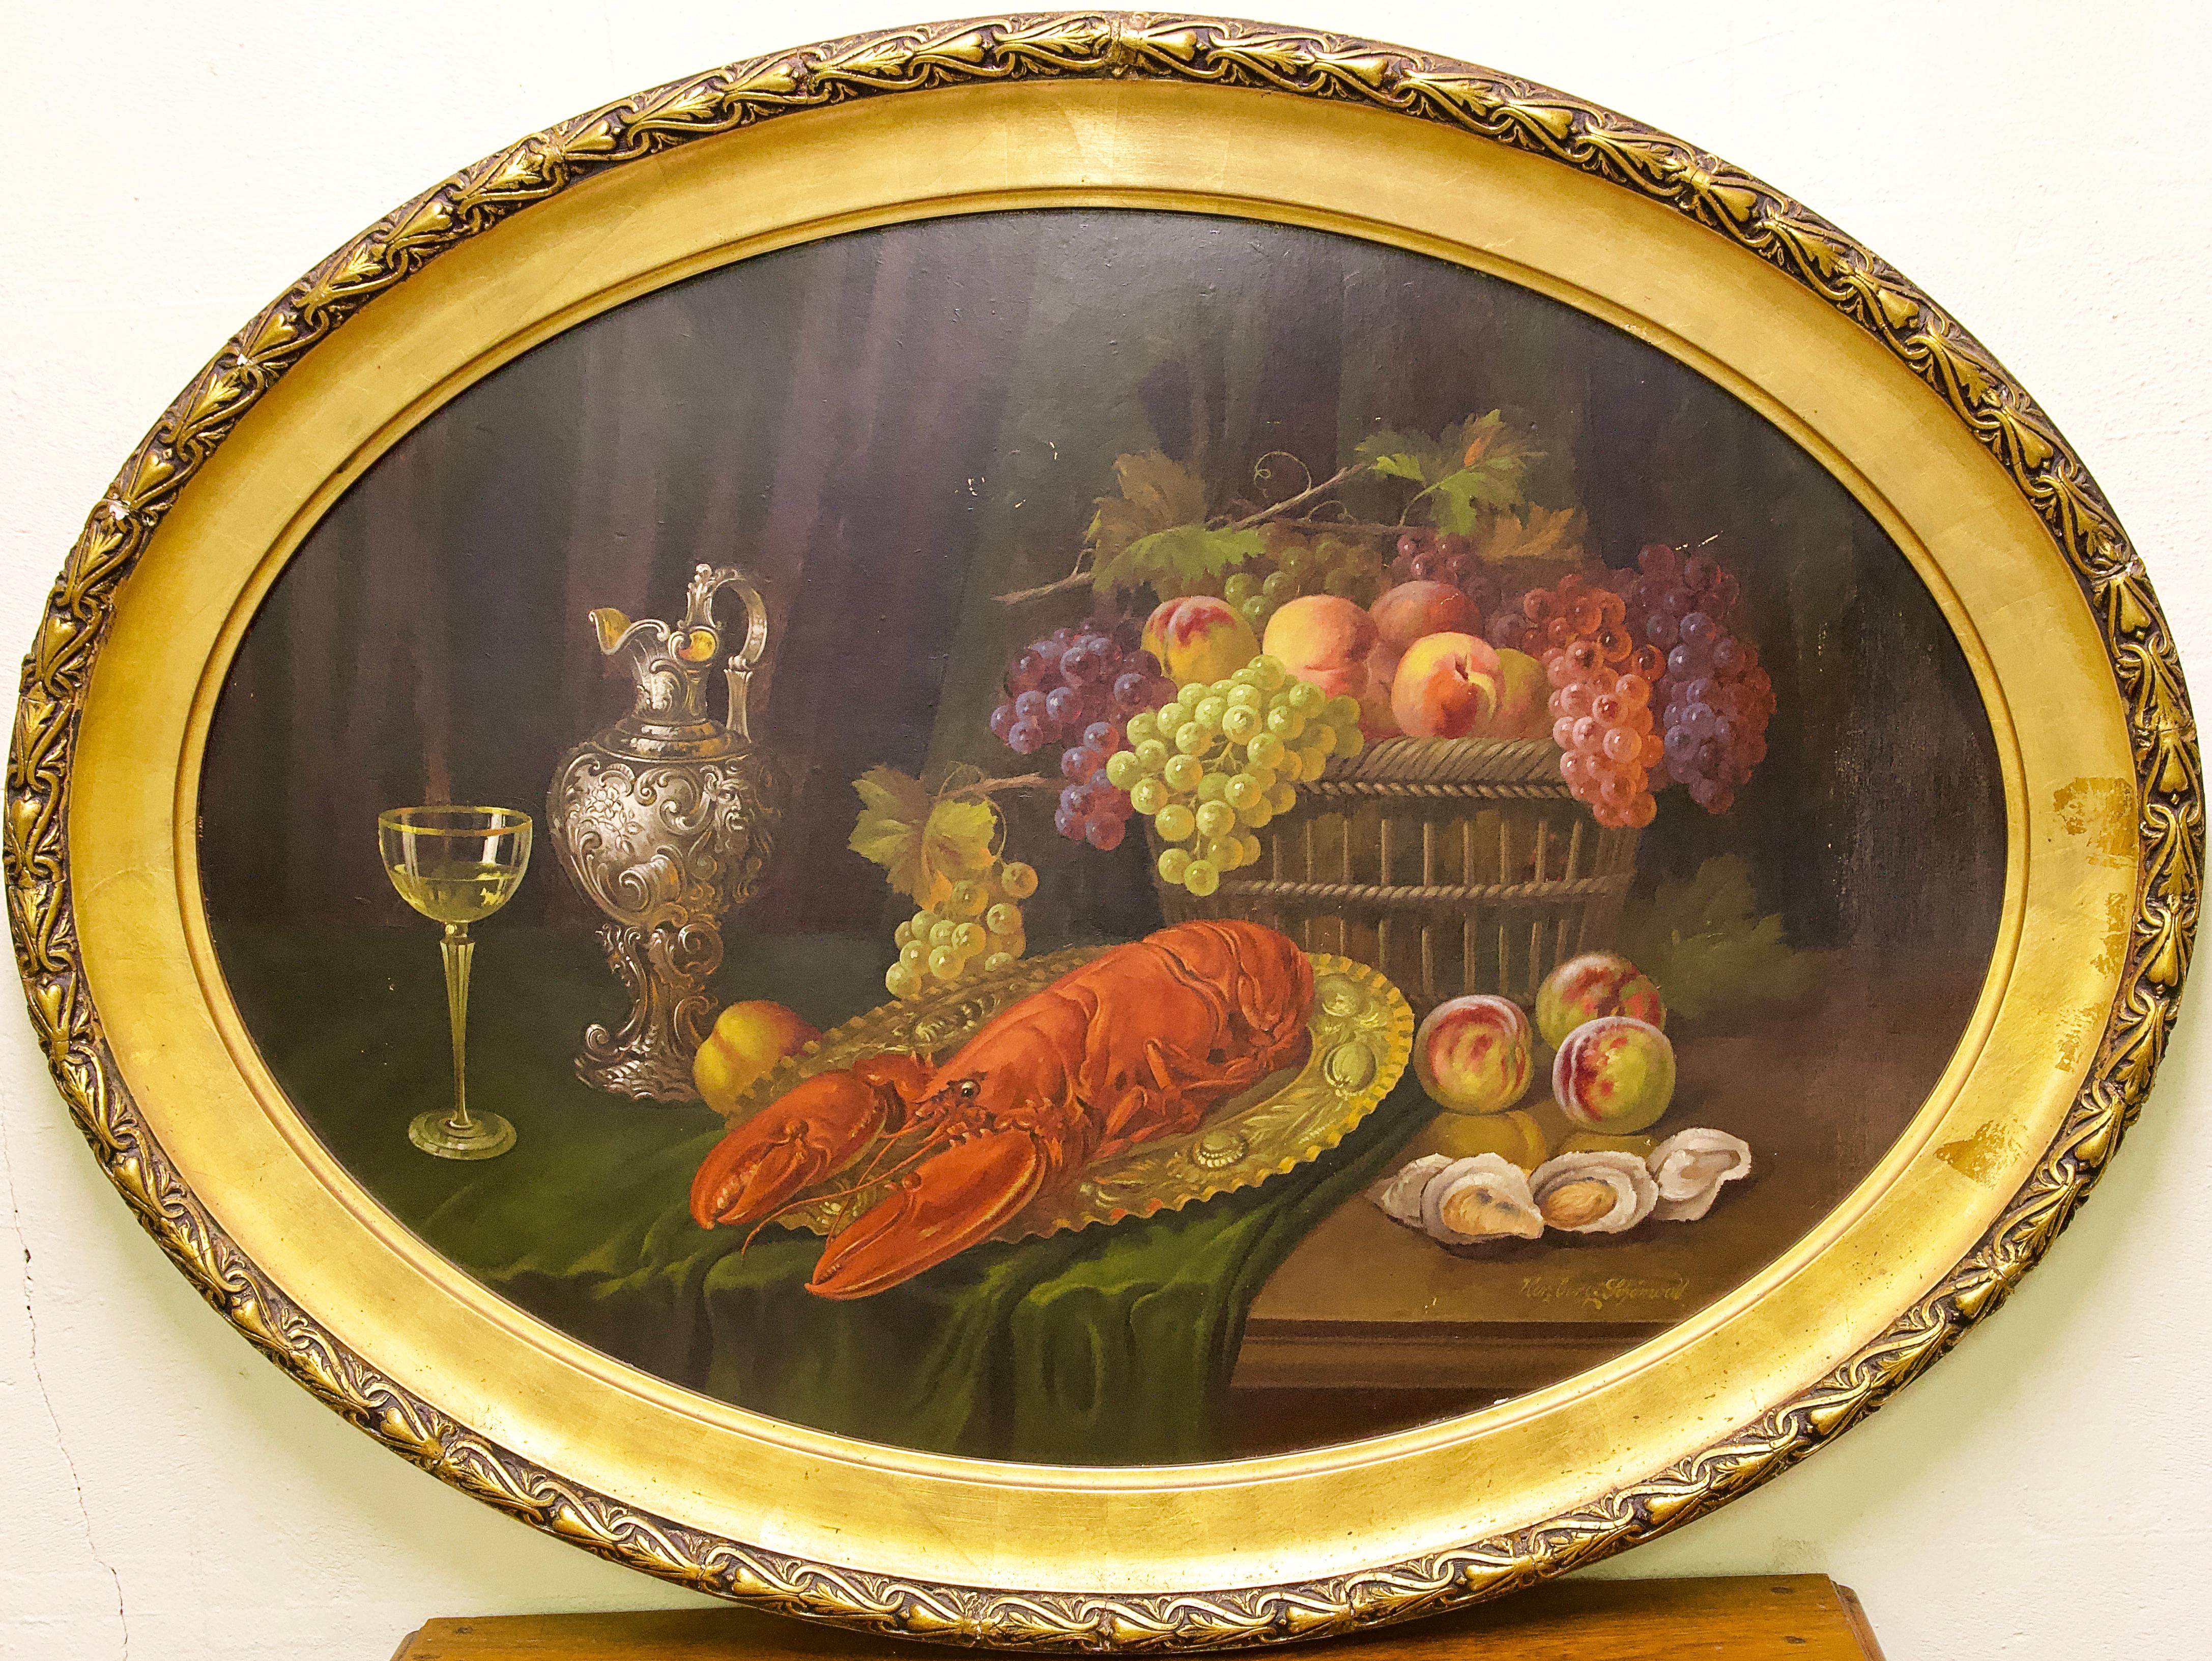 Ovales Stillleben, mit Früchten und Hummer. Ölgemälde von Herzberg-Schnwald. – Painting von F. Herzberg-Schönwald